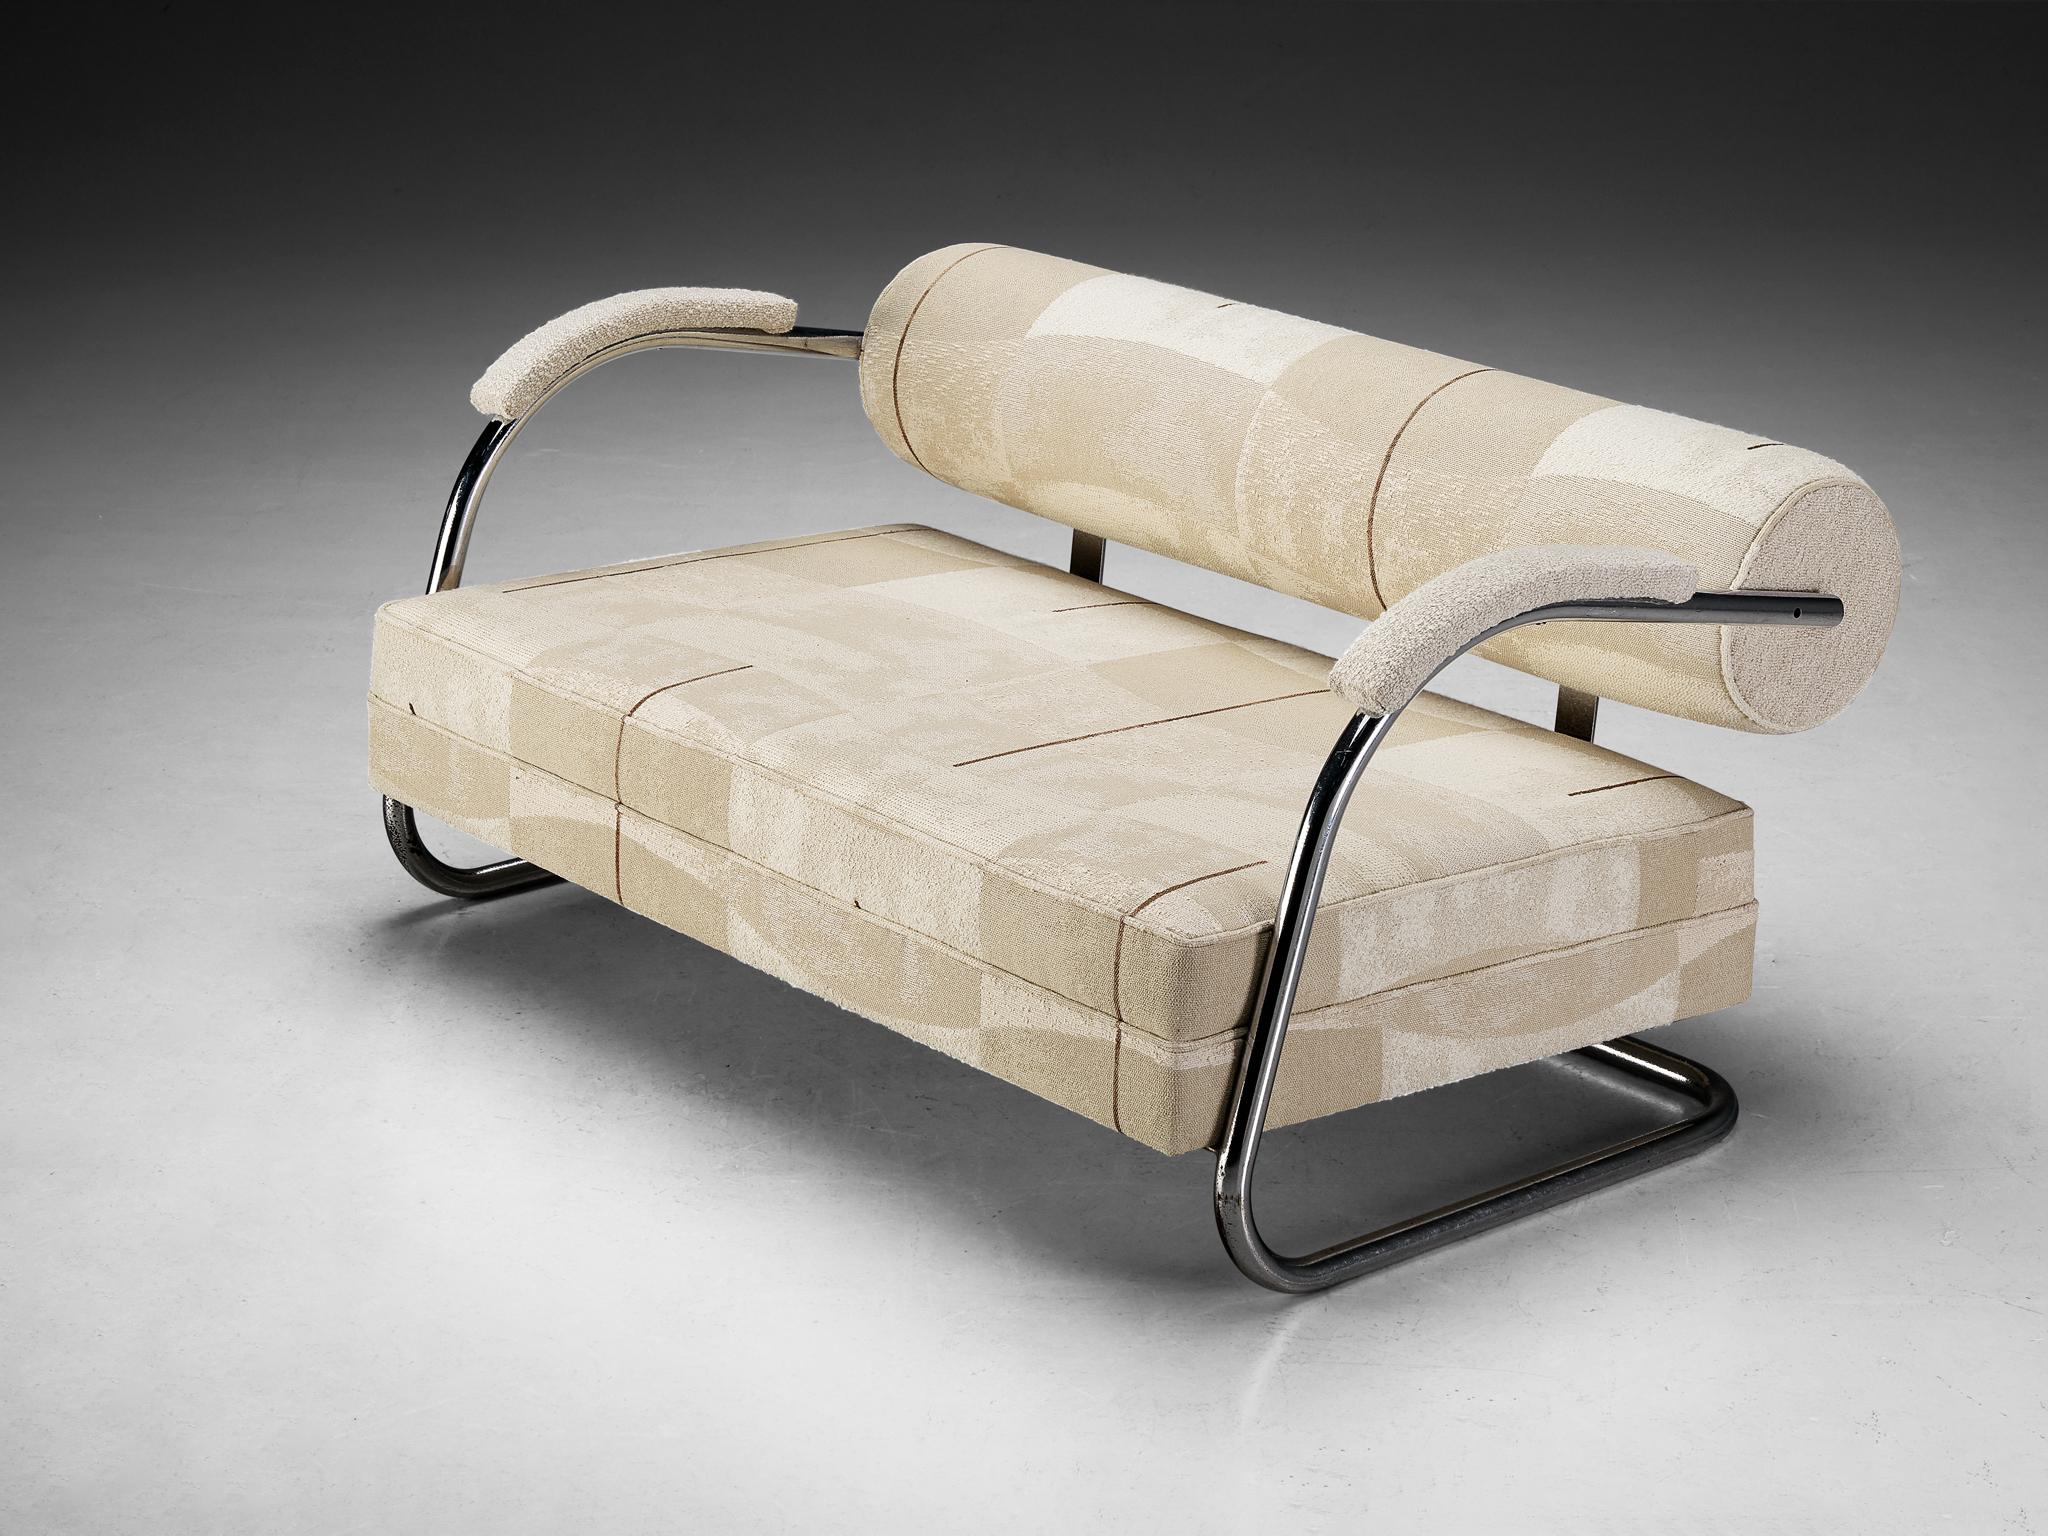 Sofa, Stoff von Larsen, verchromtes Metall, Nordeuropa, 1930er Jahre

Dieses Sofa wurde nach den Prinzipien der Bauhaus-Bewegung entworfen. Das Design besteht aus einem Rohrgestell aus verchromtem Metall und zeichnet sich durch markante Linien und